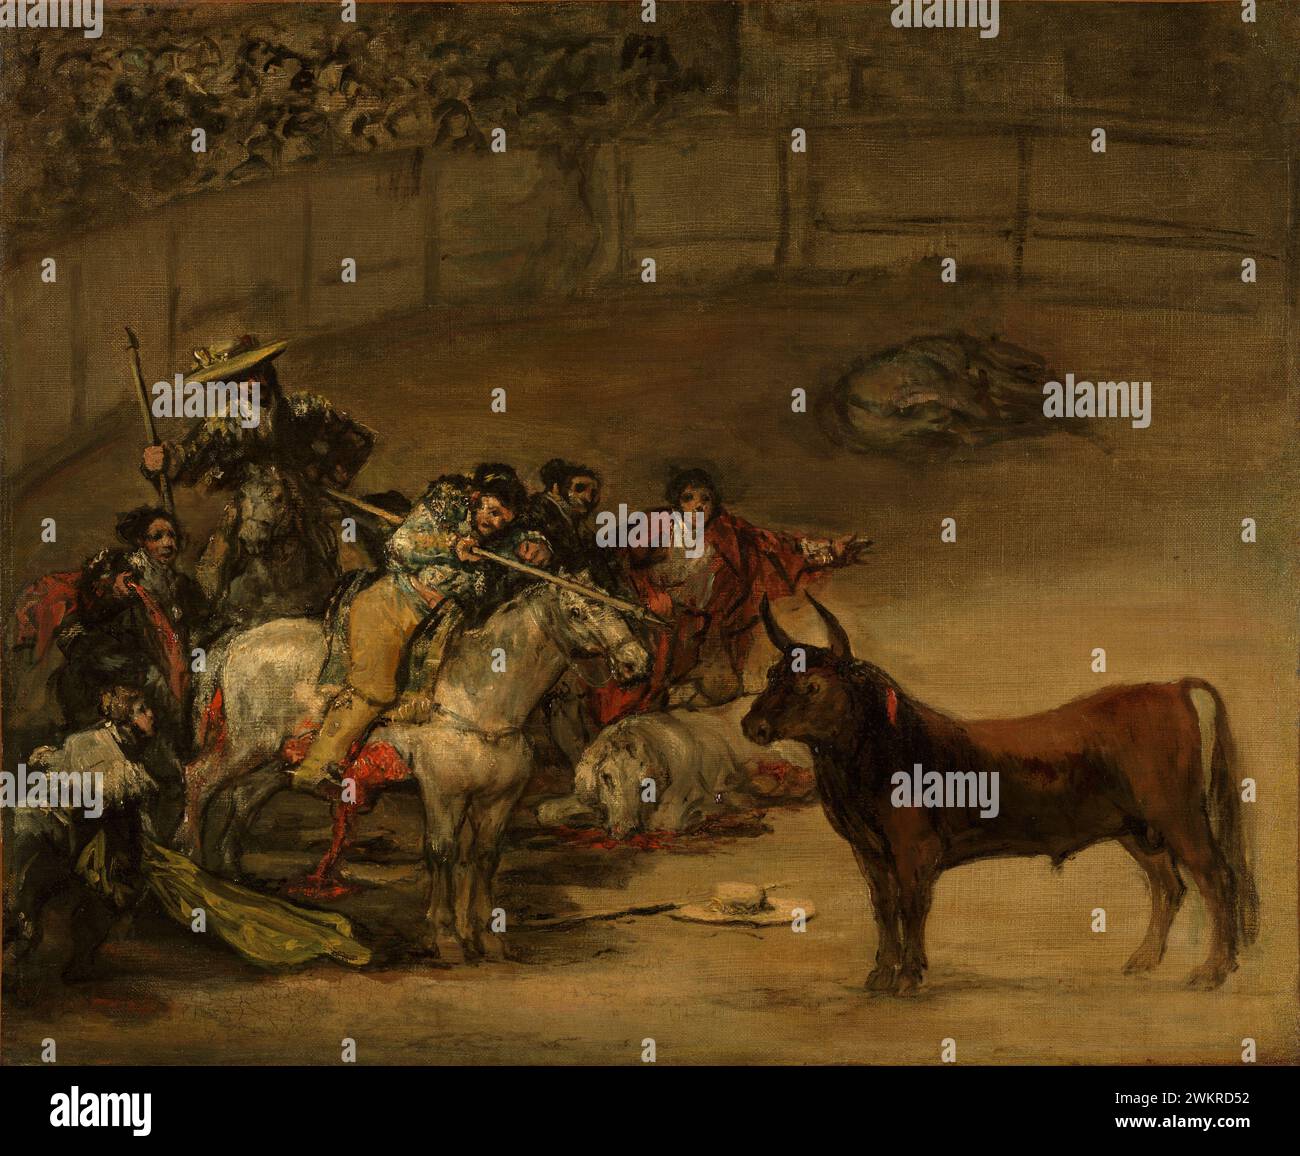 Corrida, Suerte de Varas, de Francisco José de Goya y Lucientes (Francisco de Goya) (Espagnol, 1746 - 1828) ; 1824 ; Huile sur toile, 49,8 × 70,8 cm (19 5/8 x 27 7/8 in.) ; 93.PA.1 Banque D'Images